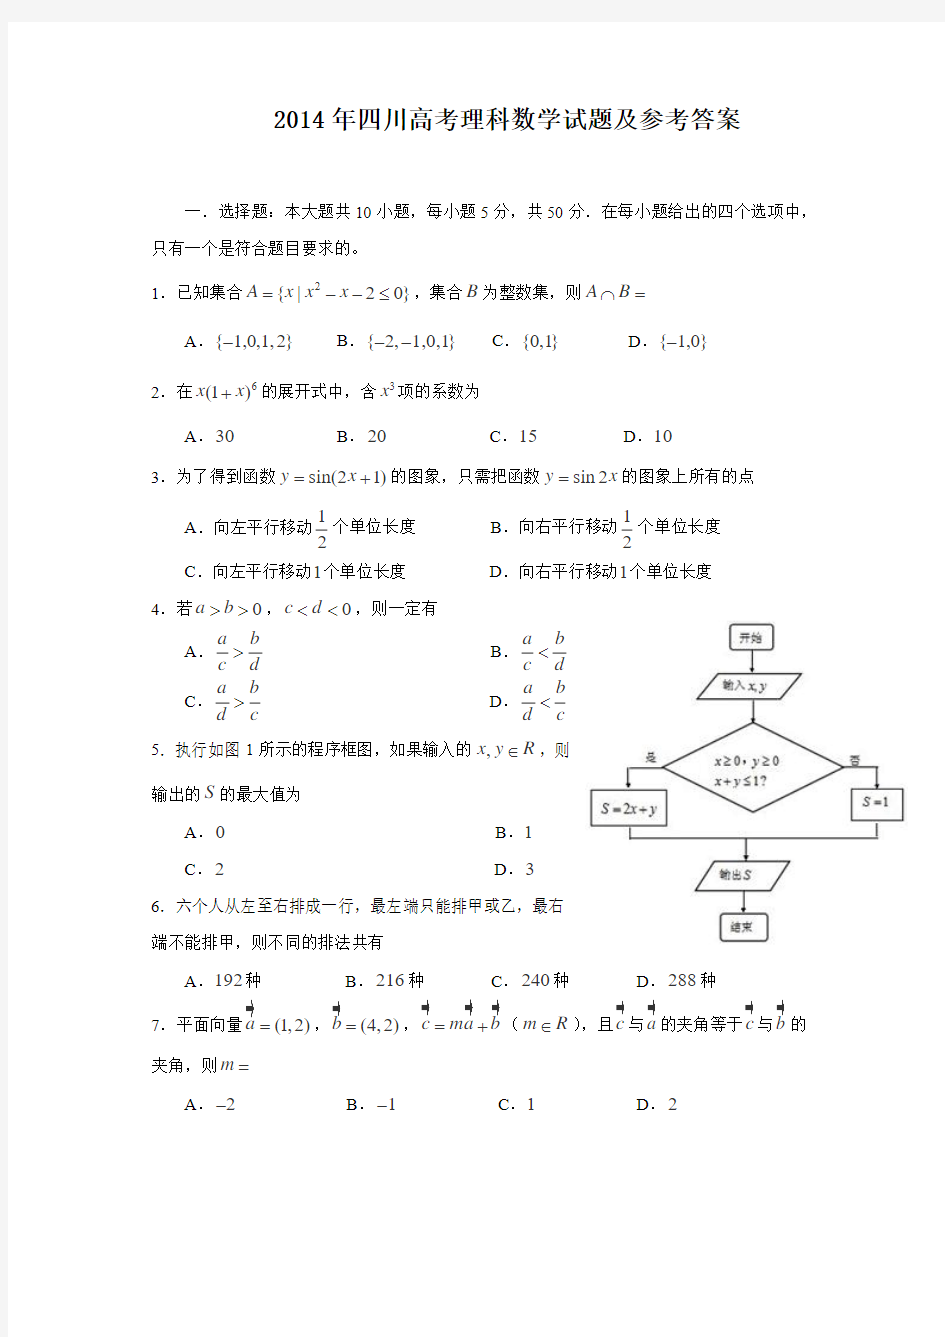 2014年高考理科数学试题(四川卷)及参考答案